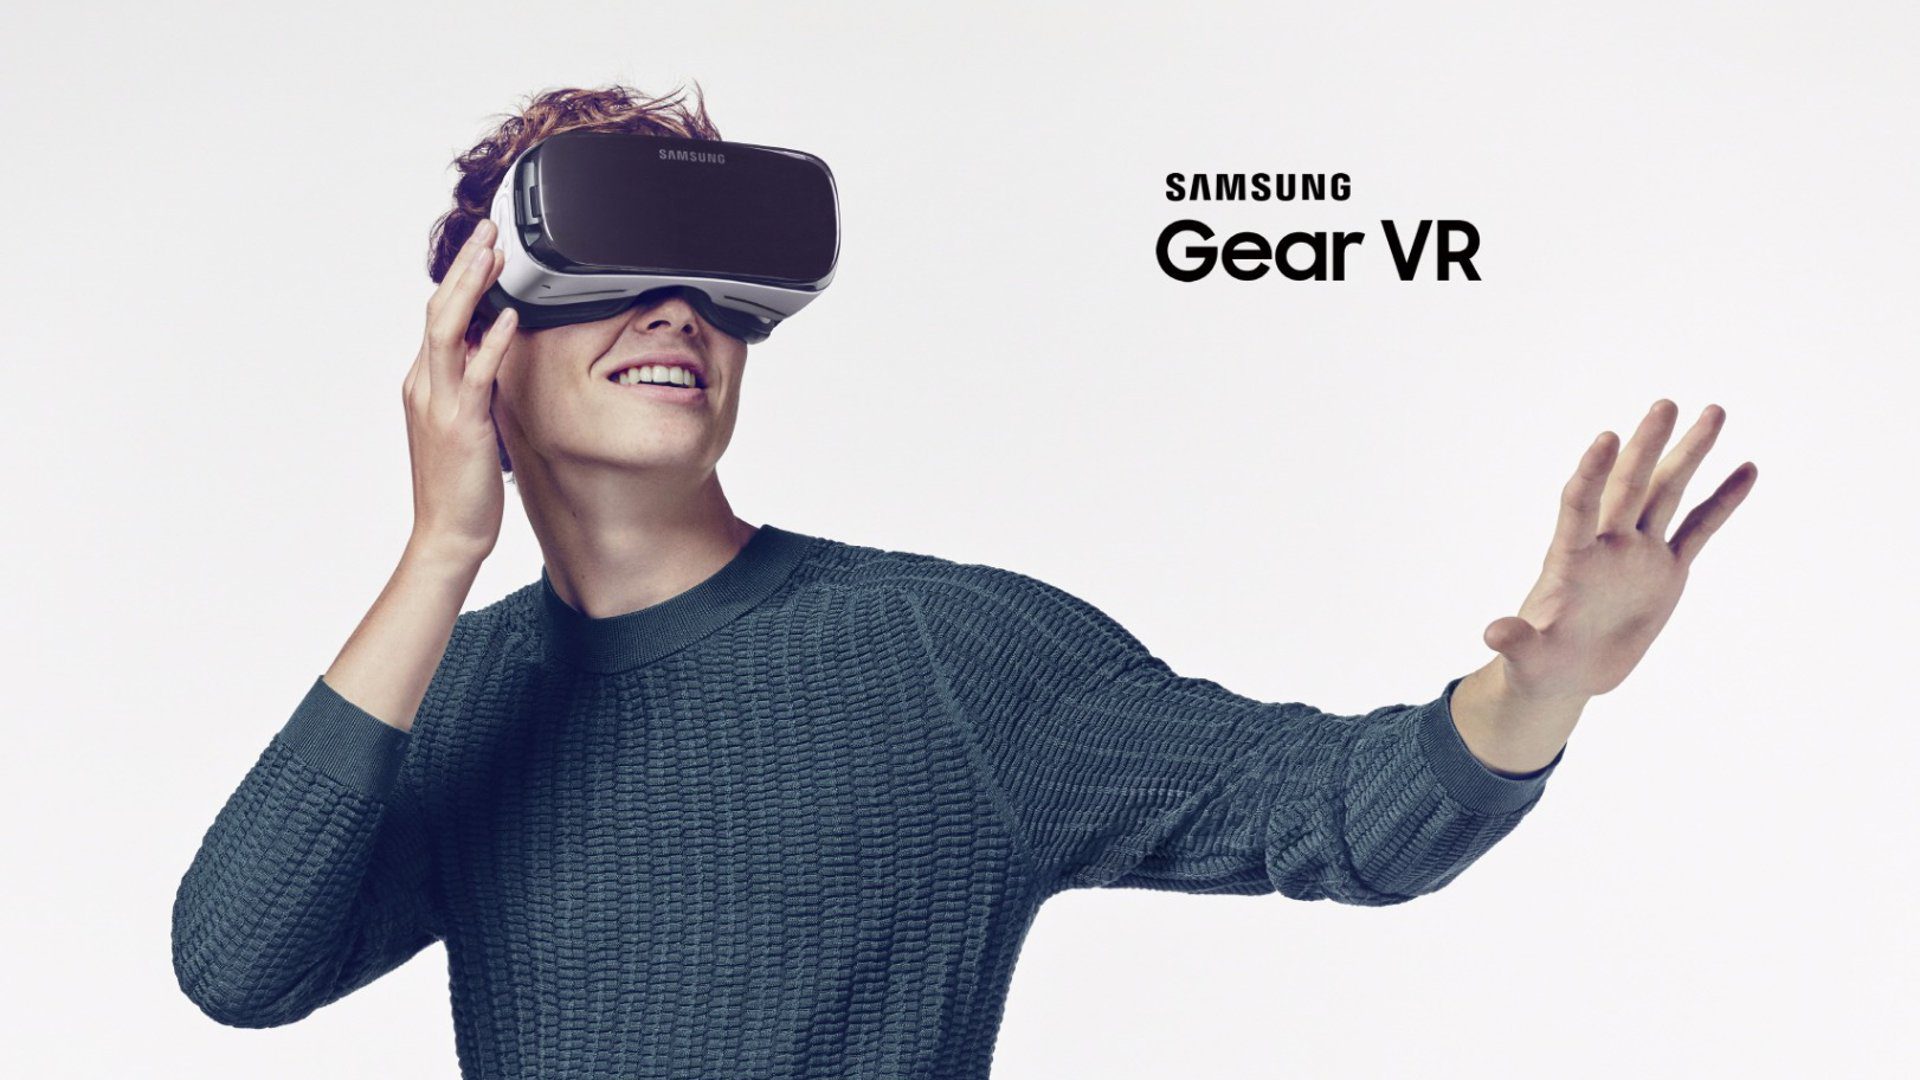 almuerzo felicidad necesario La familia Galaxy S10 abandonará el soporte para Gear VR en diciembre -  Universo Samsung